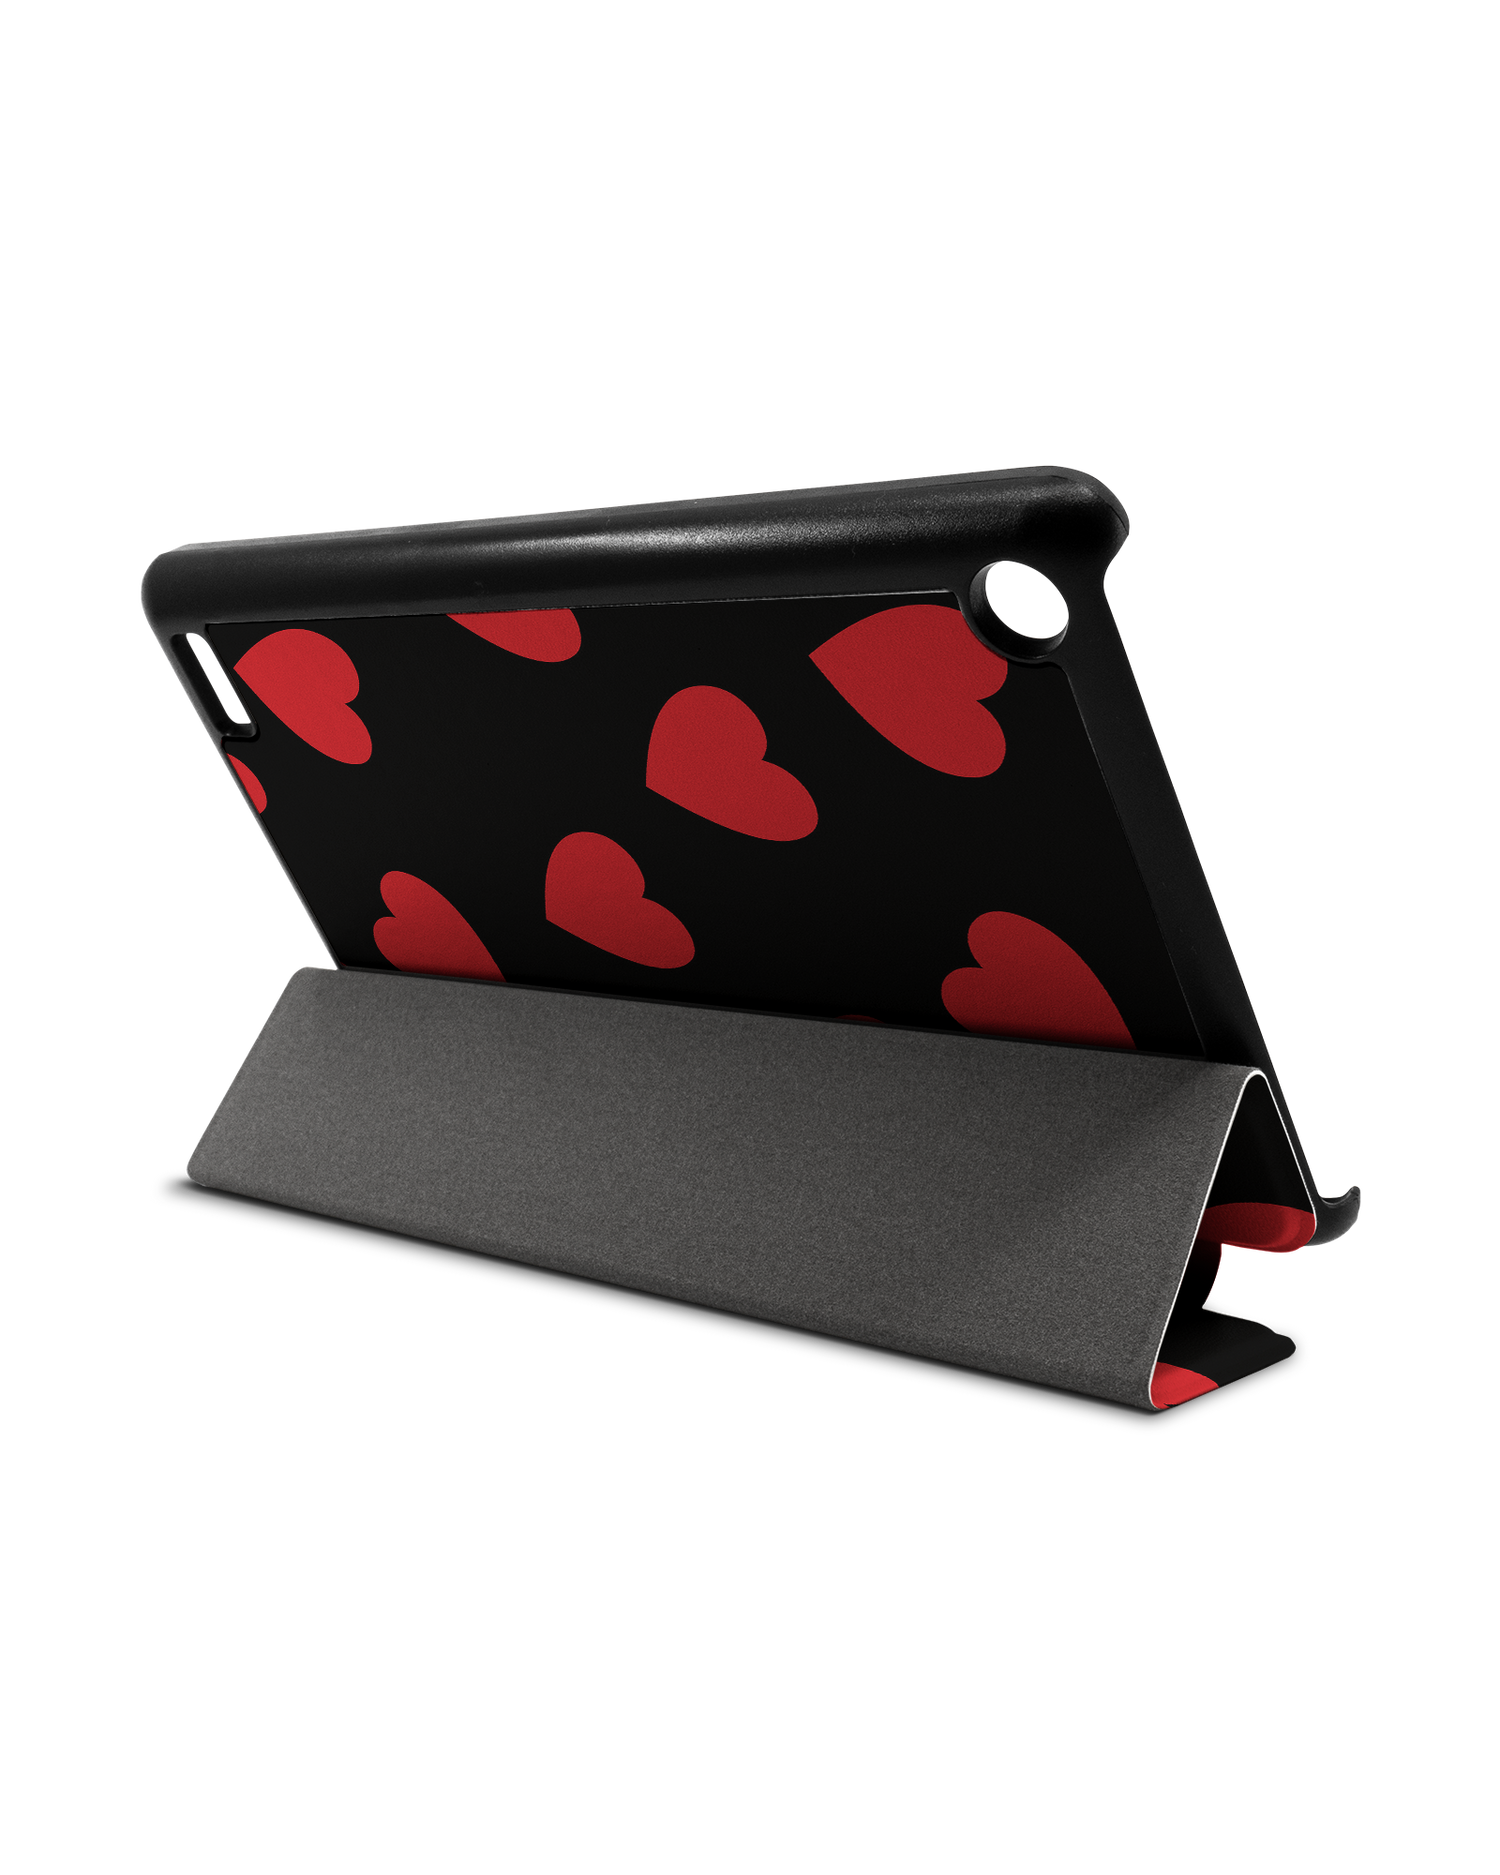 Repeating Hearts Tablet Smart Case für Amazon Fire 7: Aufgestellt im Querformat